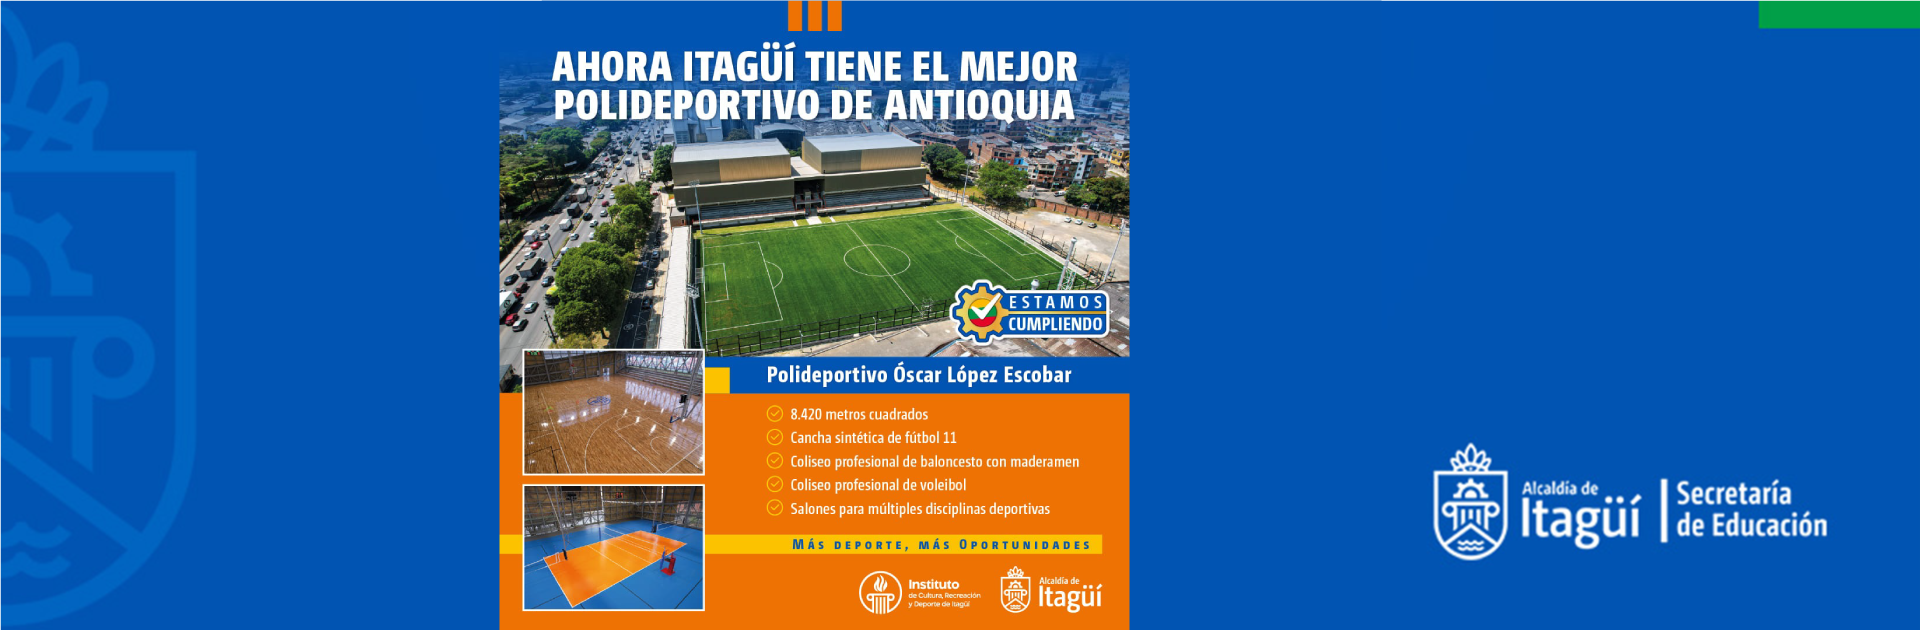 Ahora Itagüí tiene el mejor polideportivo de Antioquia